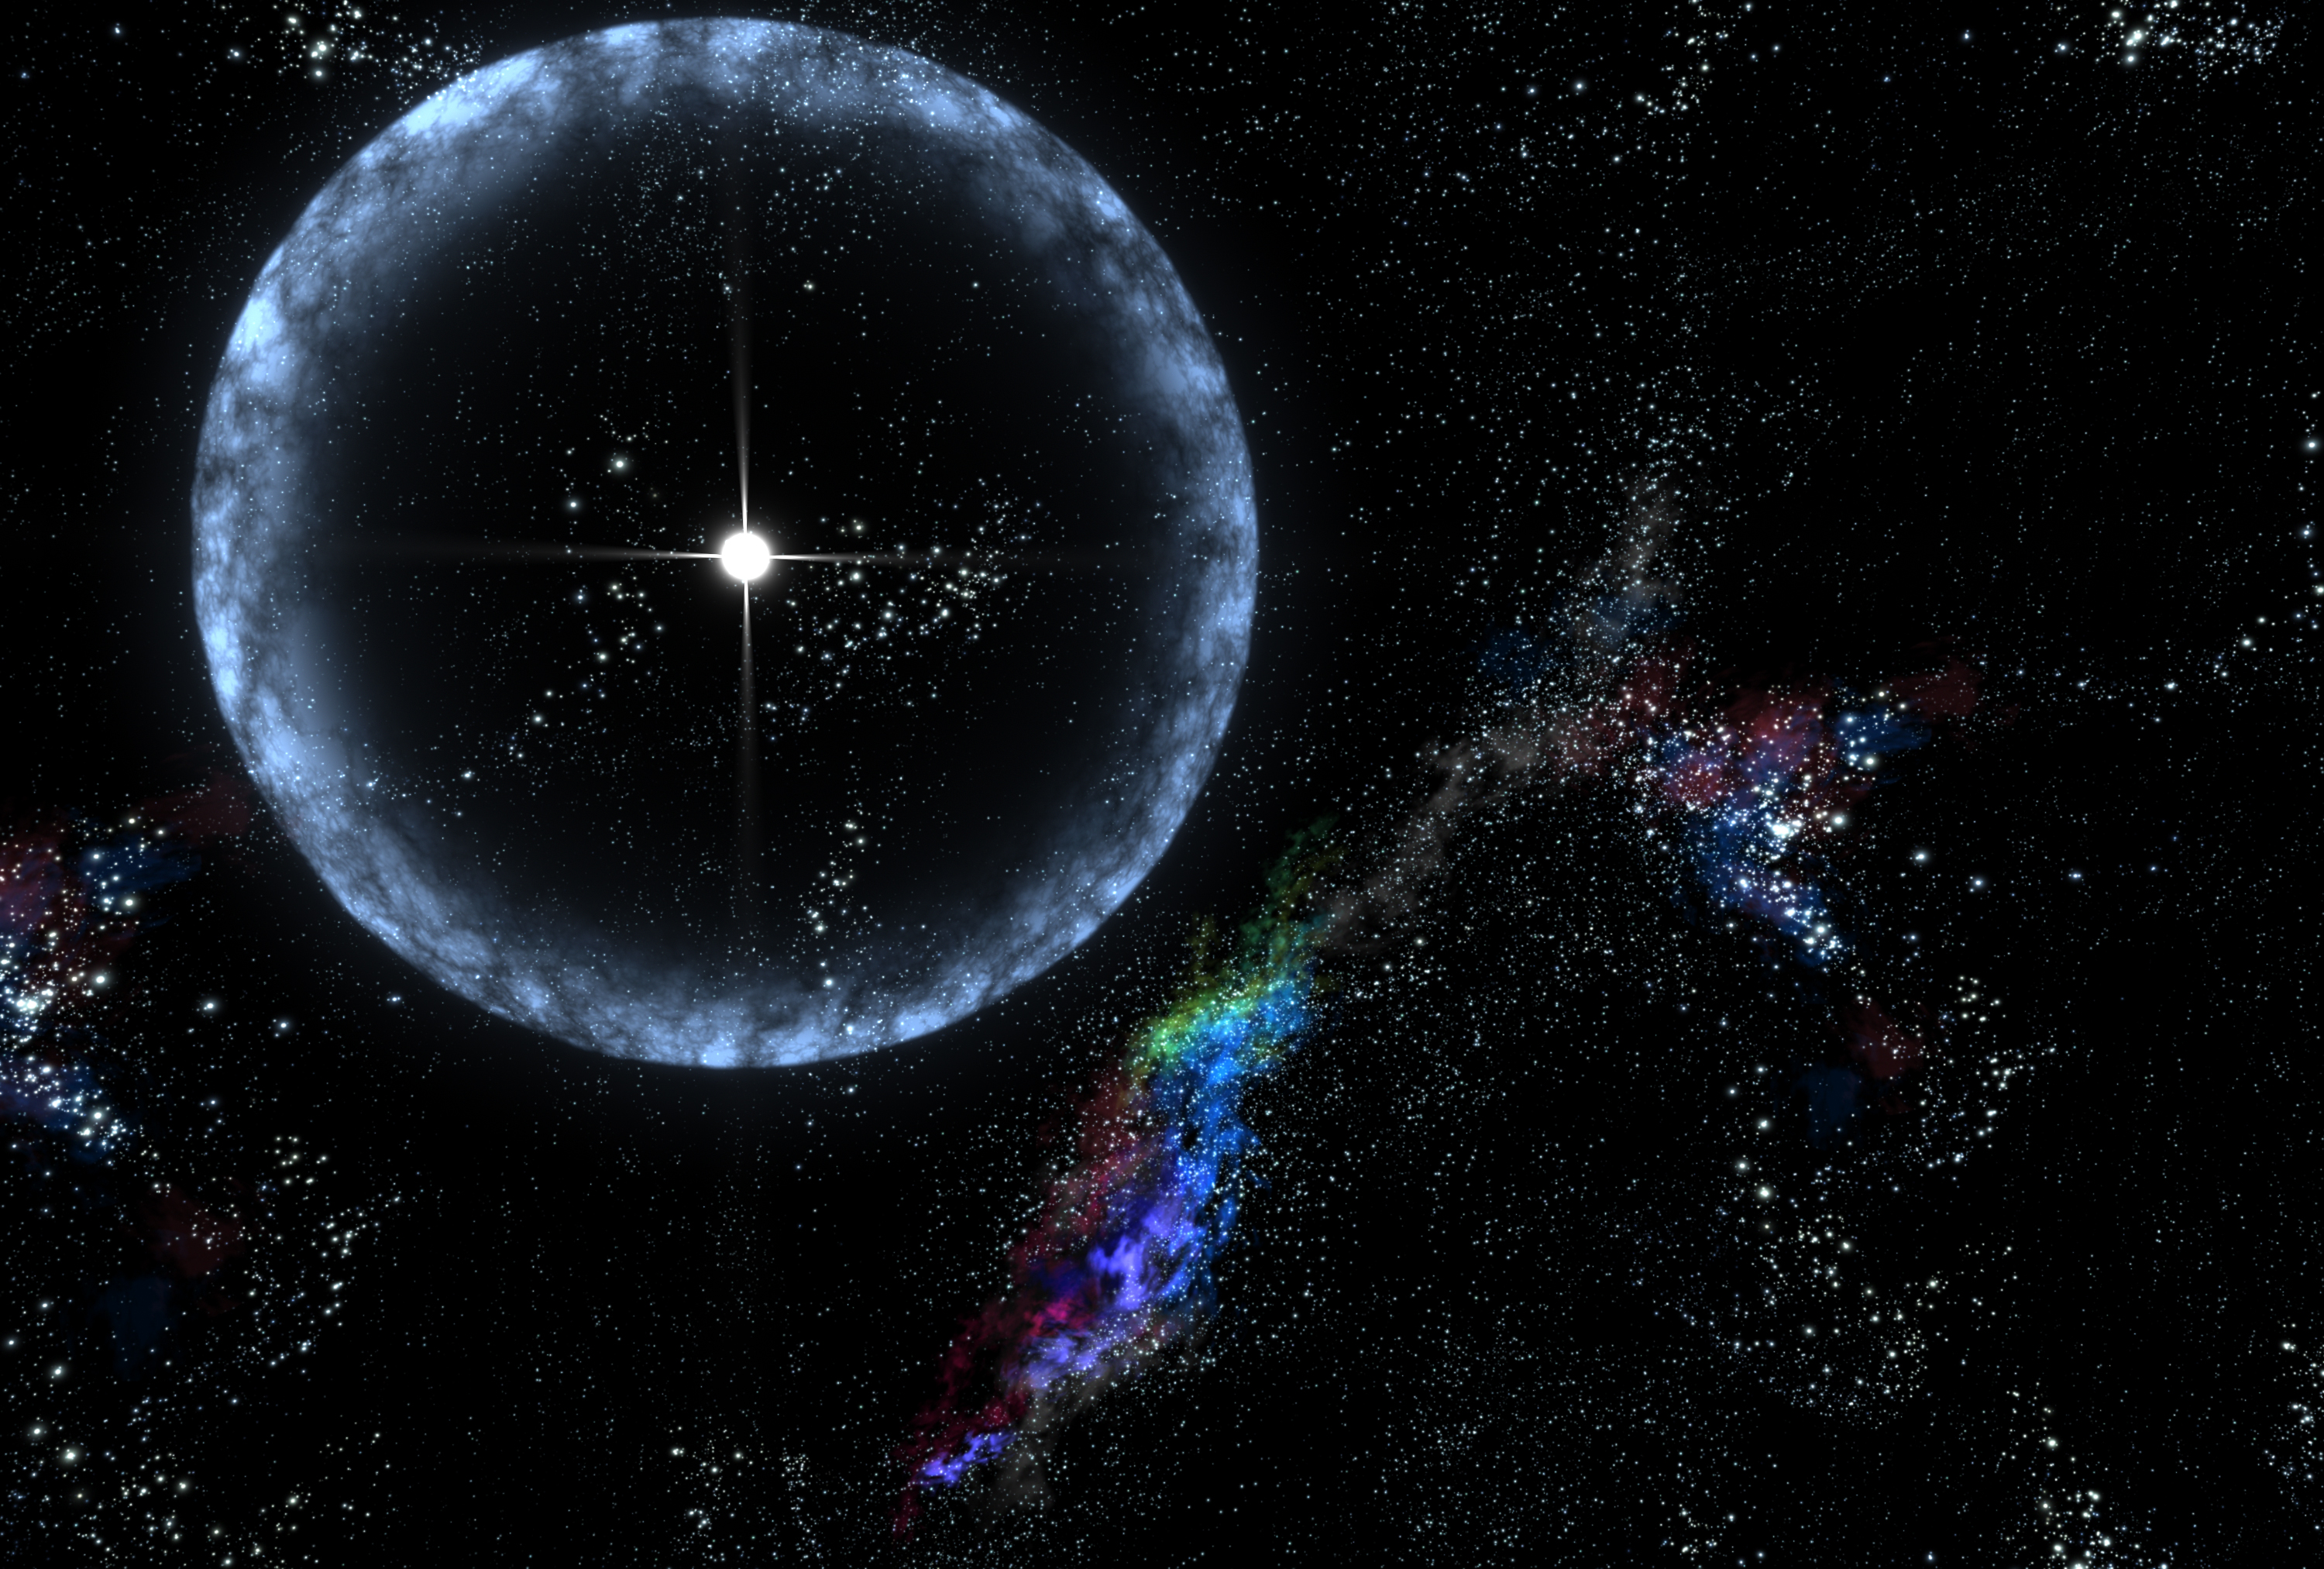 Cosmic blast: Magnetar explosion rocked Earth on December 27, 2004